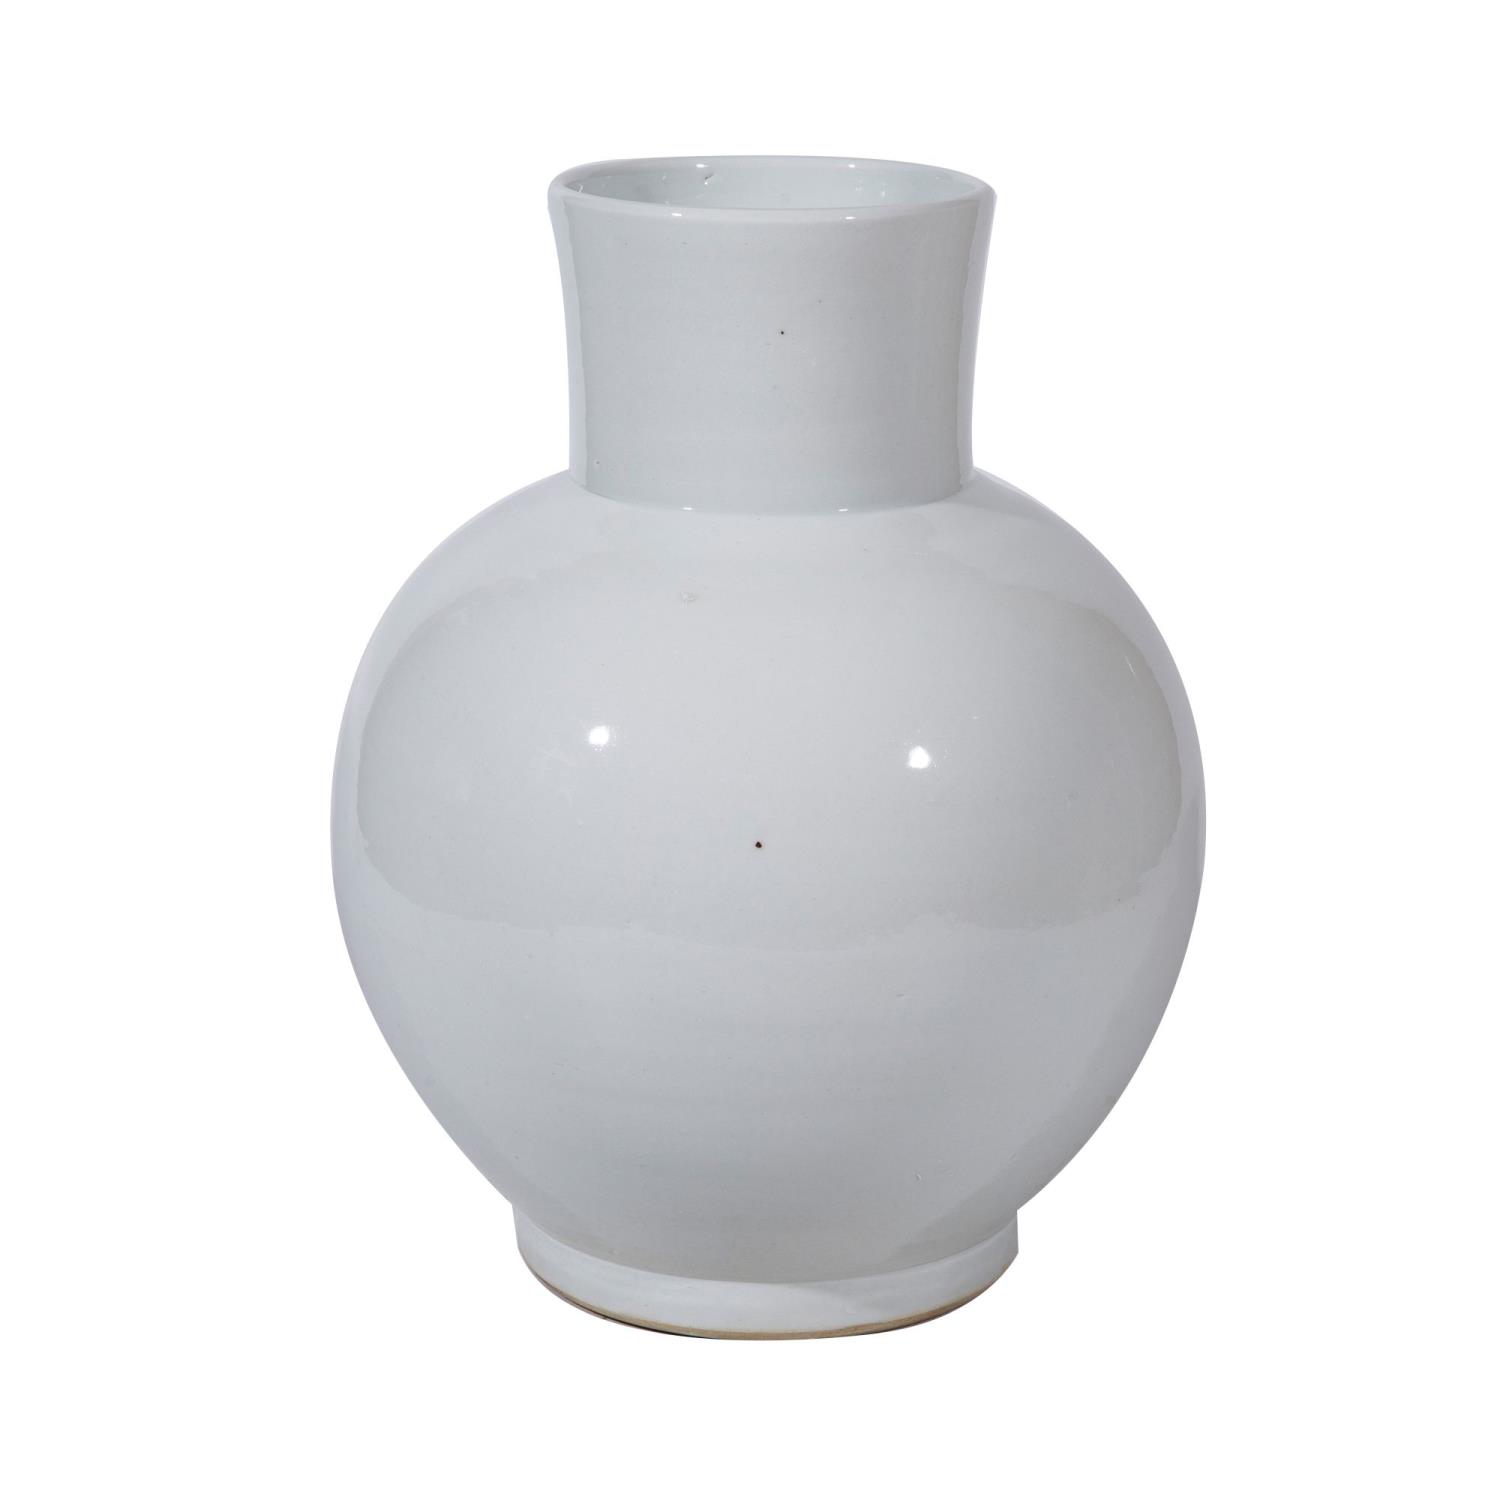 Legend of Asia Busan White Small Balloon Vase 1660S